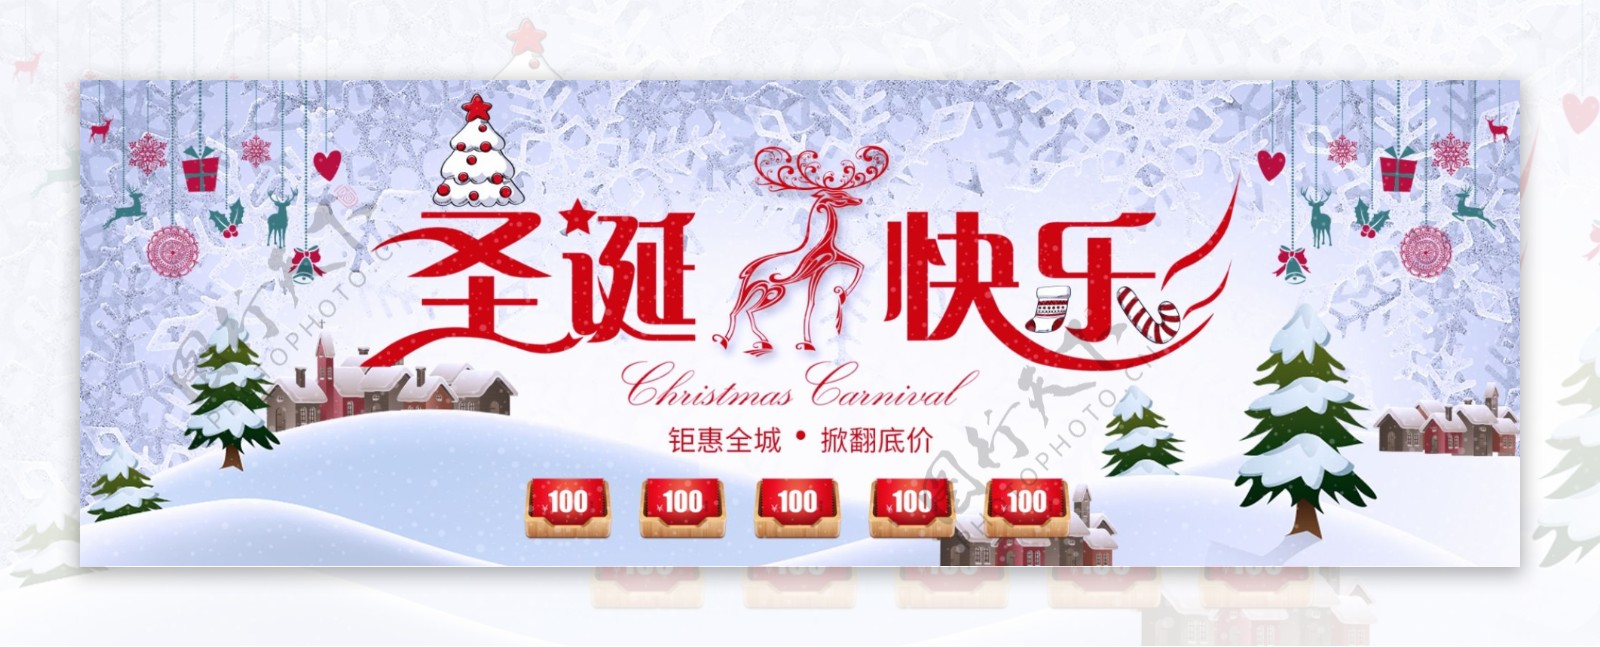 白色雪花麋鹿圣诞快乐淘宝电商banner